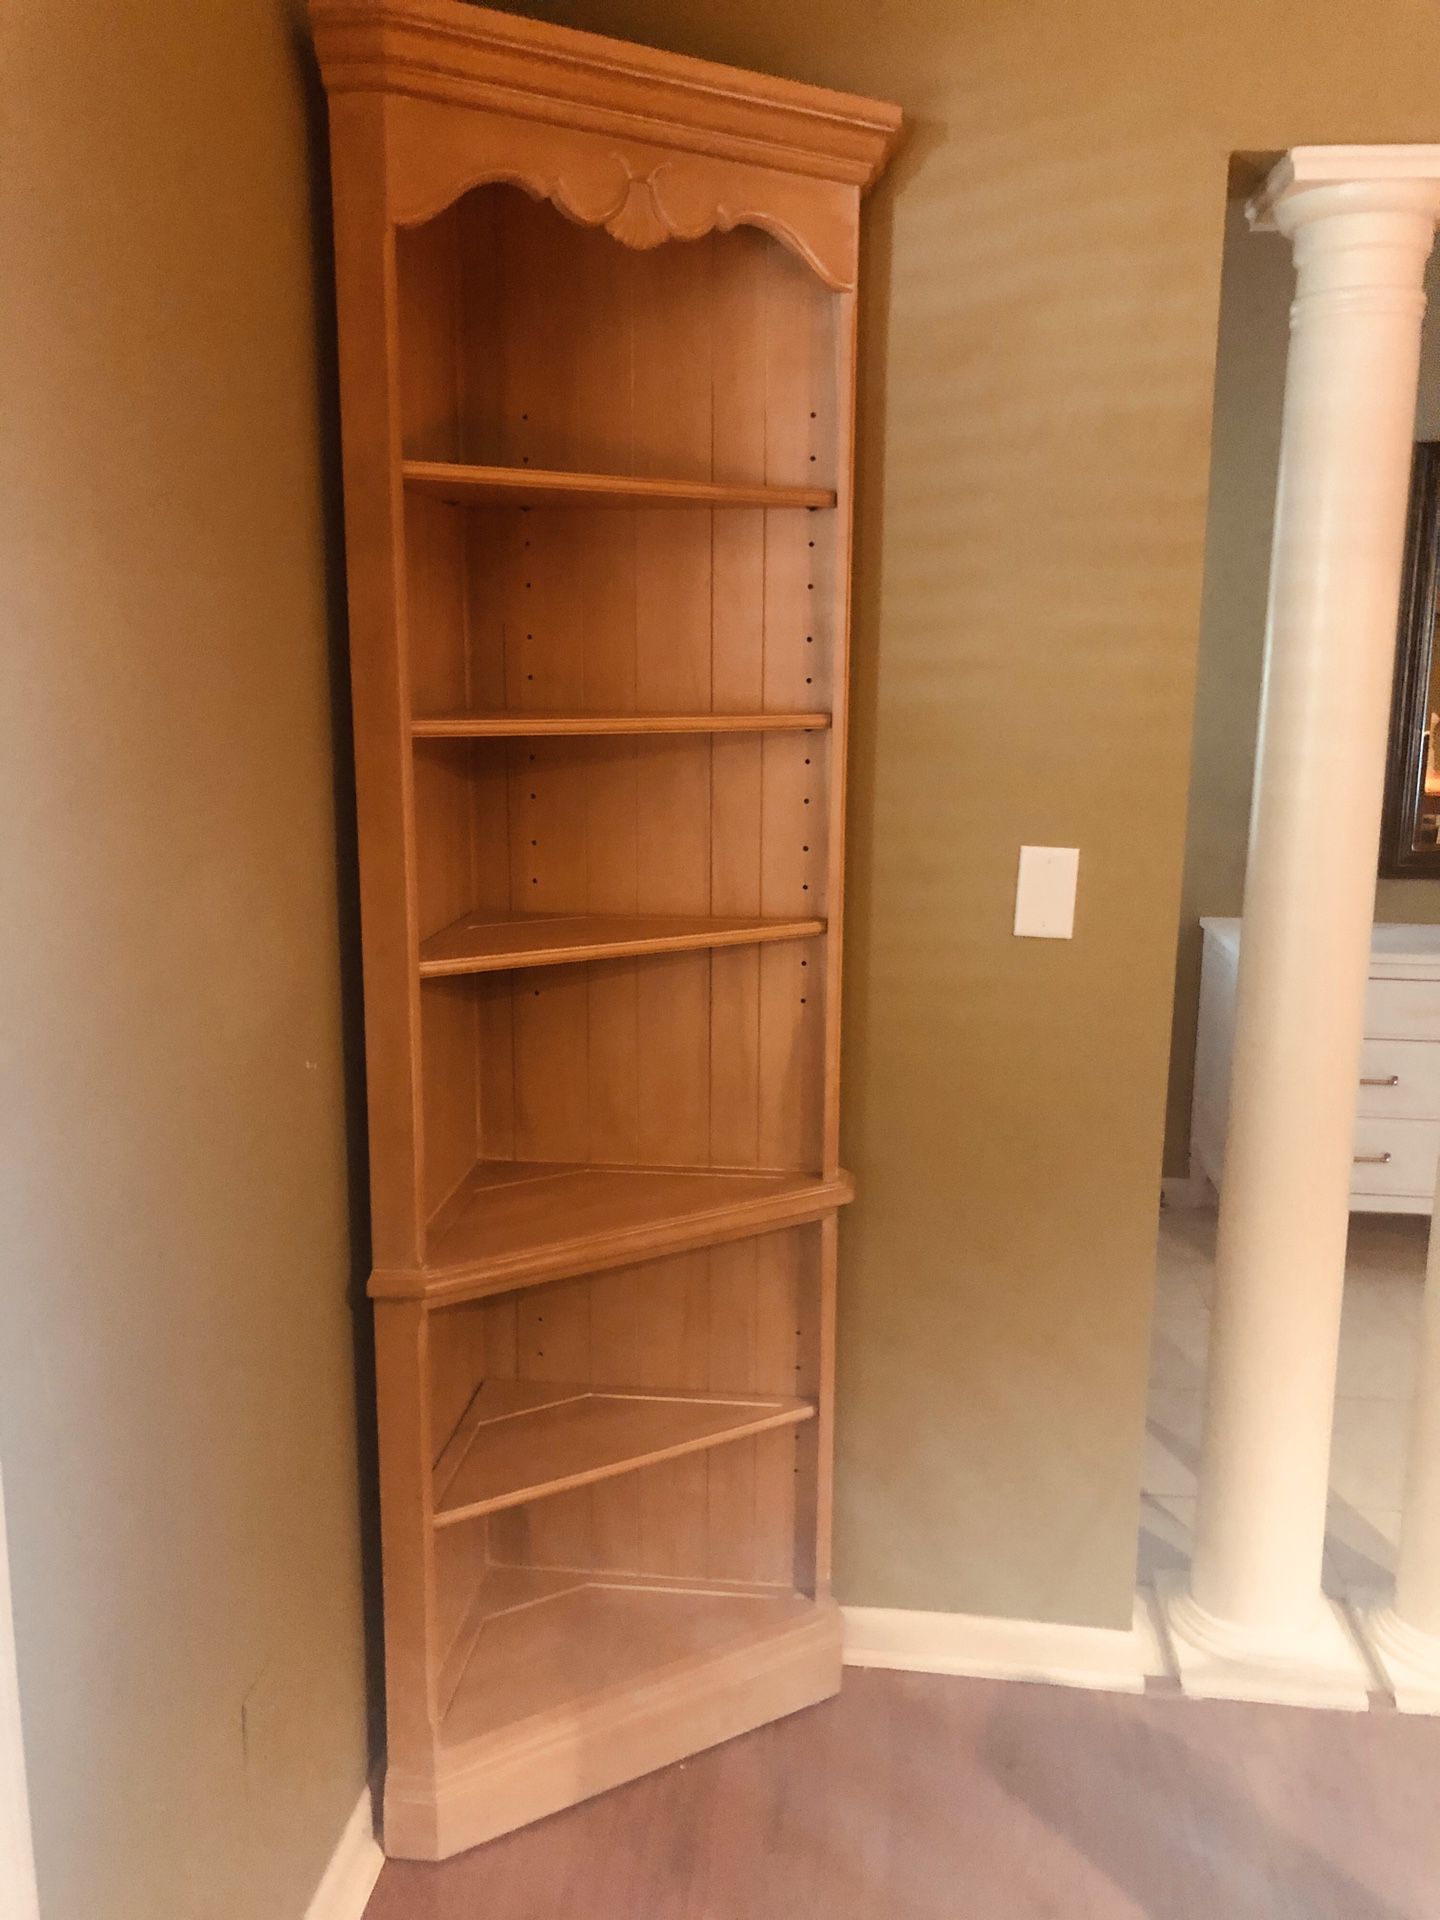 Ethan Allen corner bookcase(free)